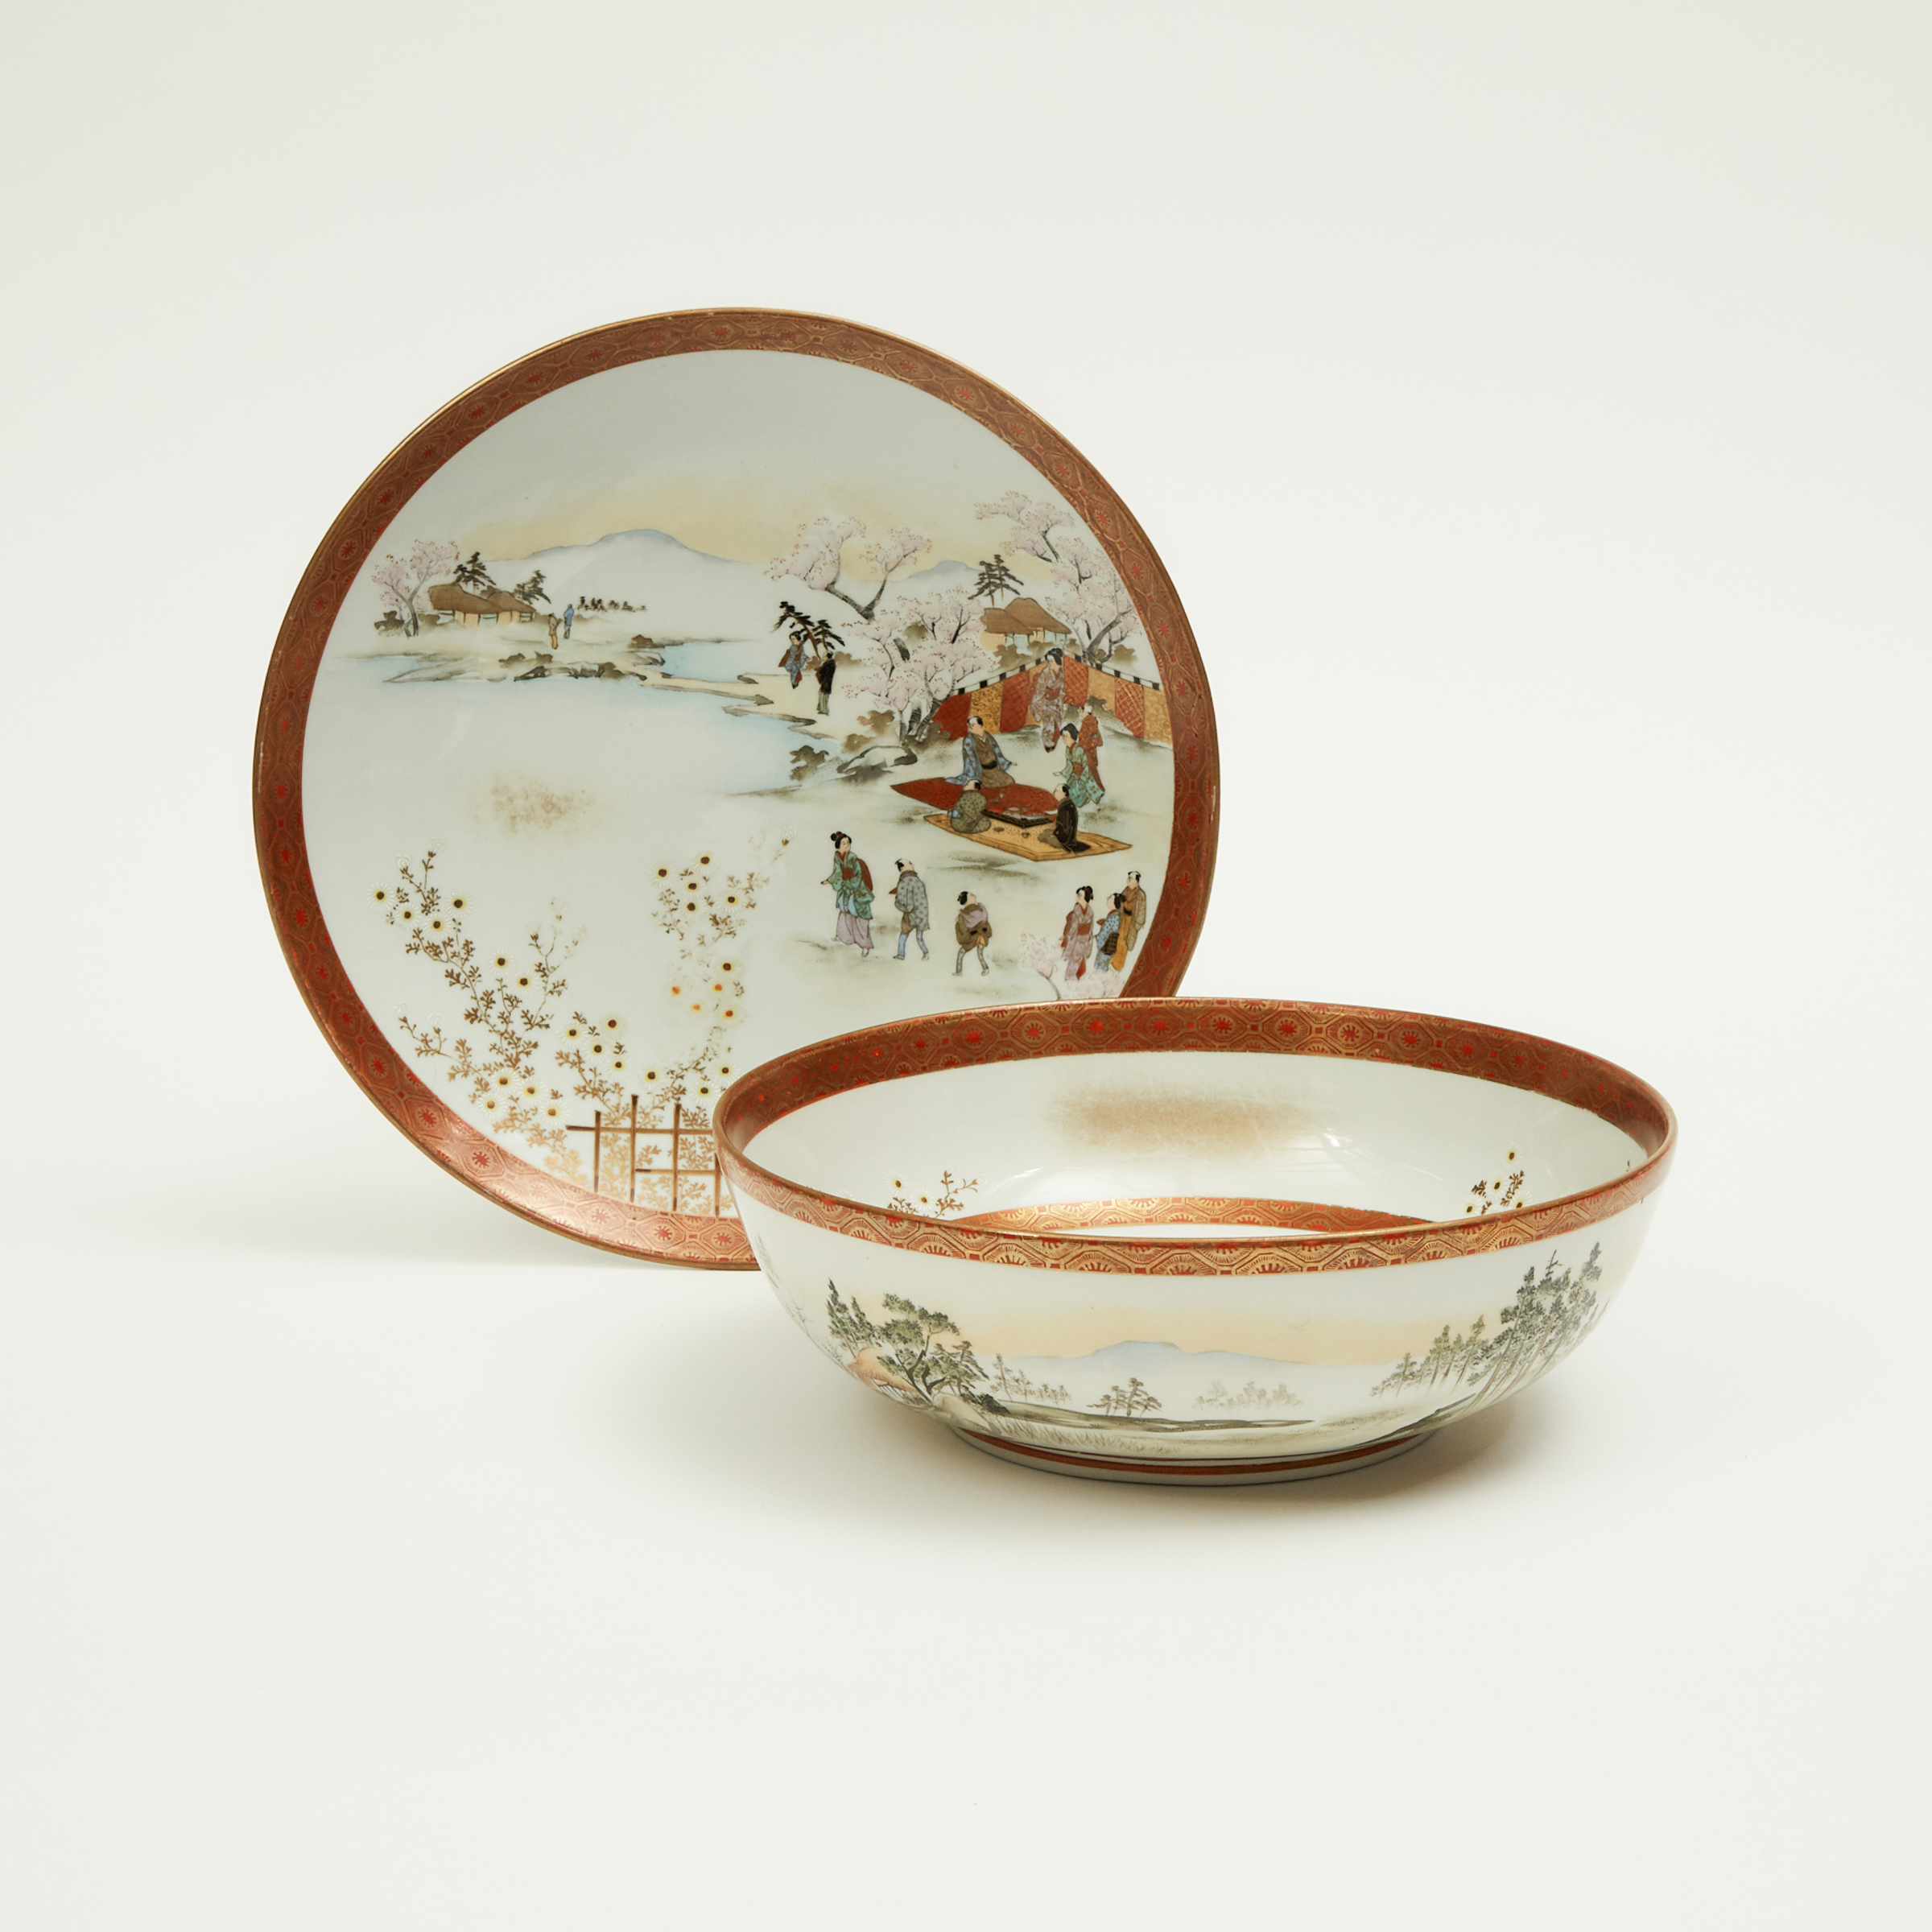 A Japanese Kutani Bowl and Dish, Meiji